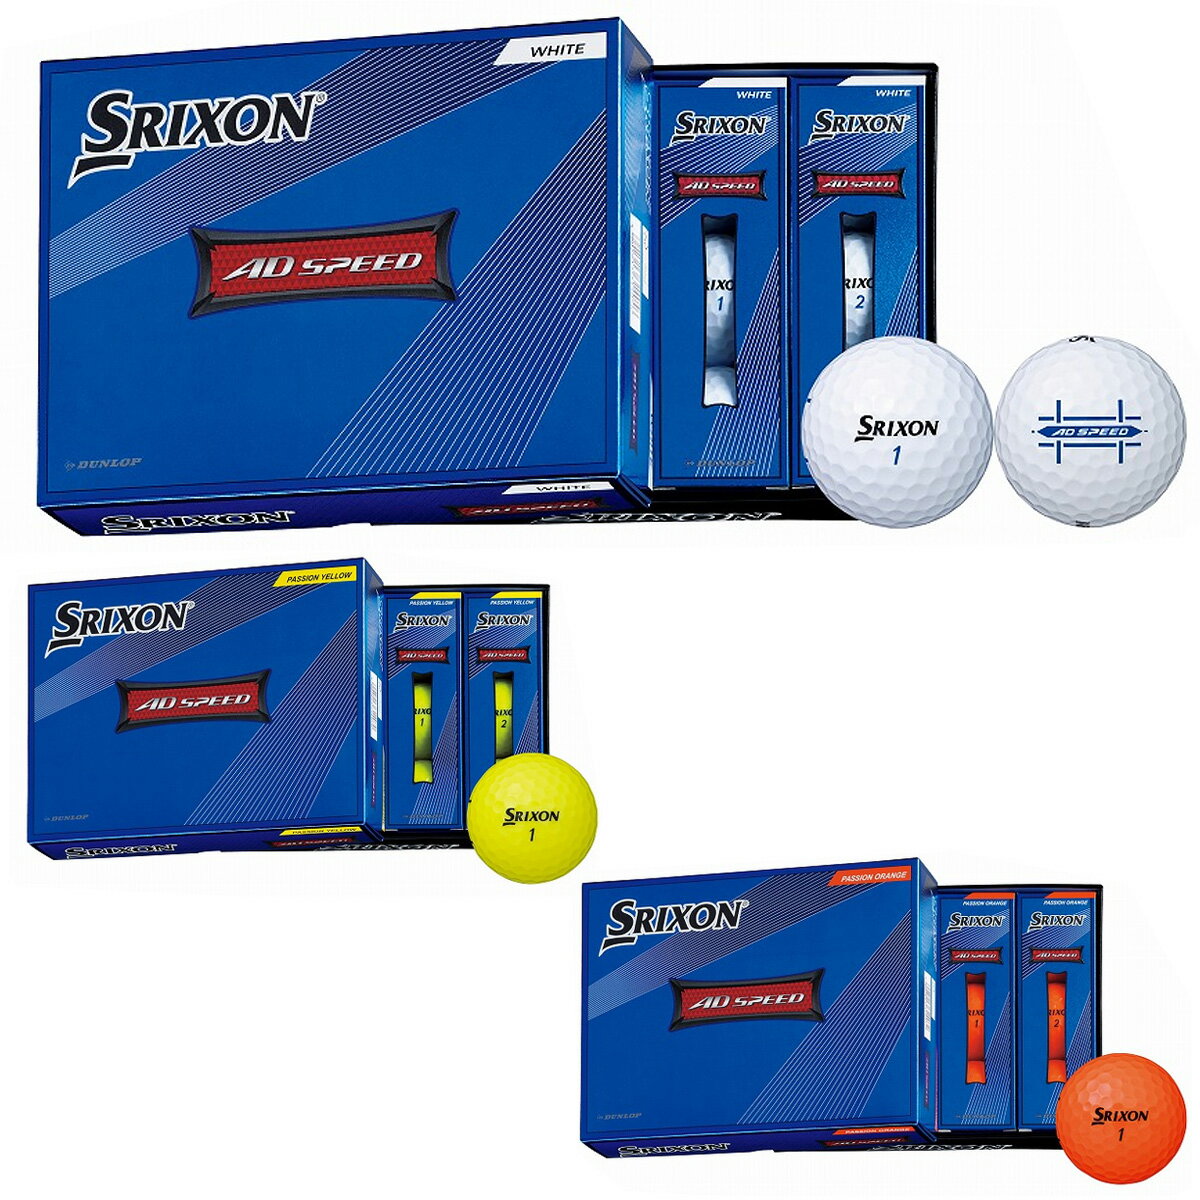 DUNLOP ダンロップ 日本正規品 SRIXON AD SPEED スリクソン エーディスピード 2022モデル ゴルフボール 1ダース(12個入り) 